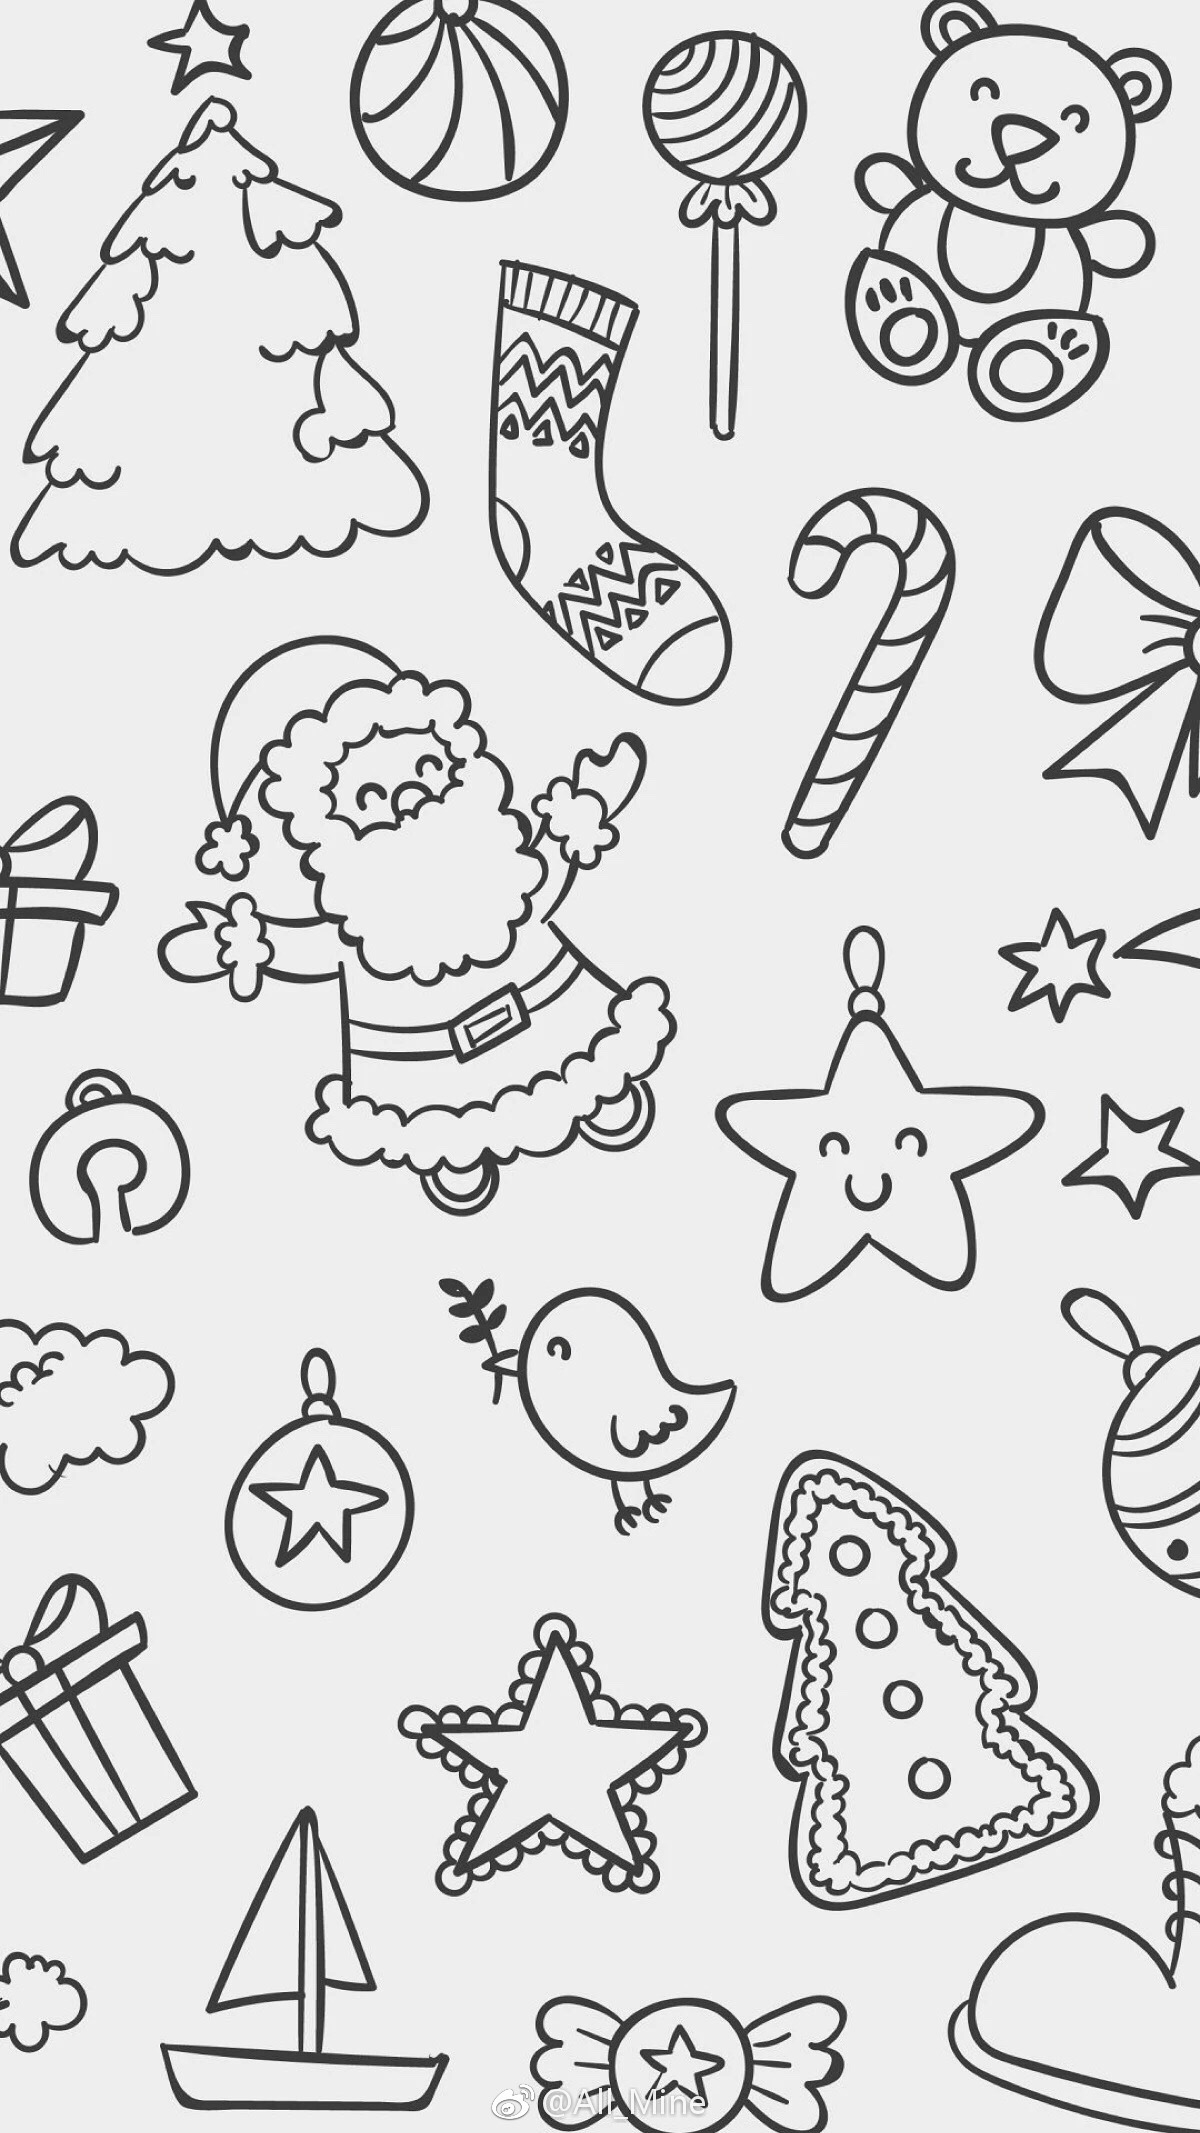 圣诞节 装扮 圣诞老人 雪人 麋鹿 雪橇 圣诞树 圣诞礼物 素材 壁纸